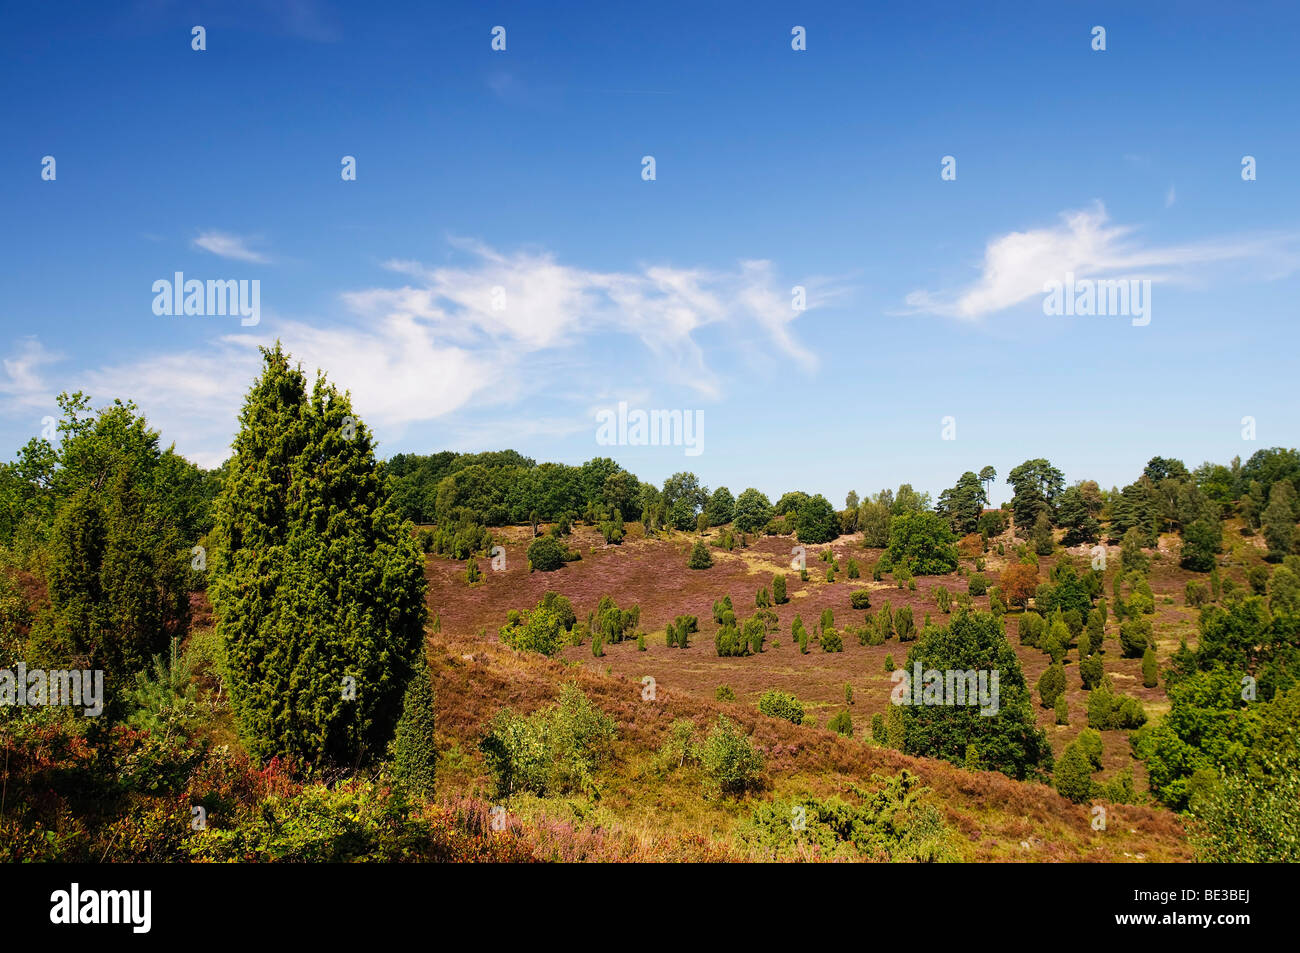 Heide mit blühenden Heidekraut (Calluna Vulgaris) und Gemeine Wacholder (Juniperus Communis), Totengrund in der Nähe von Wilsede, Lüneburg Stockfoto